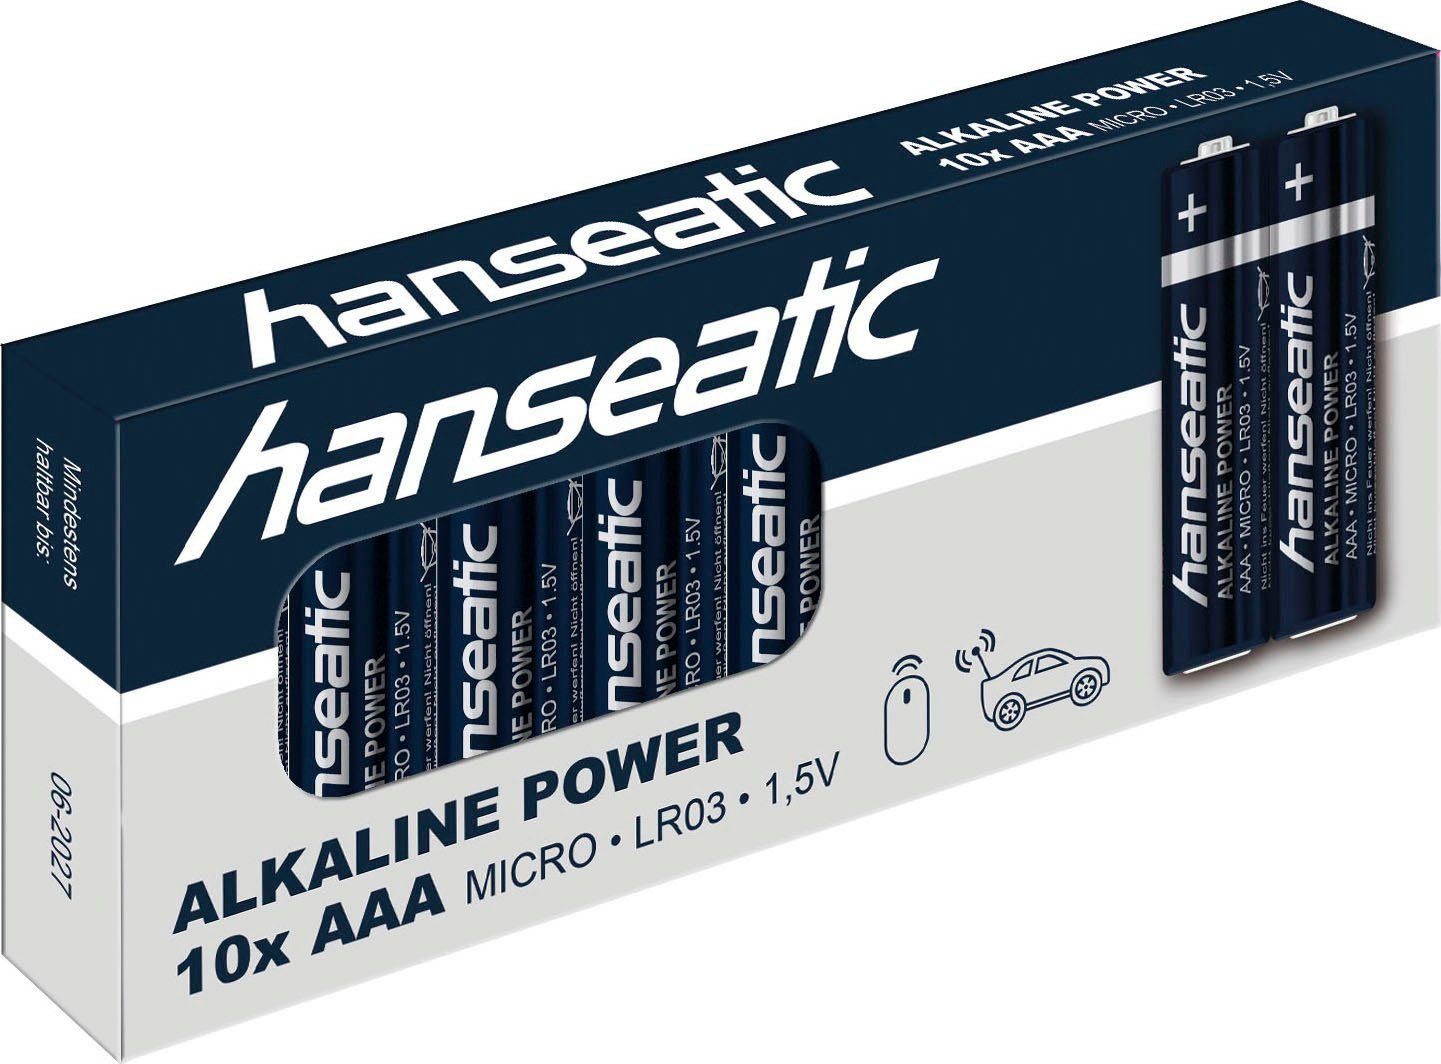 Hanseatic Batterie Set 60 + 40 Batterie Stück